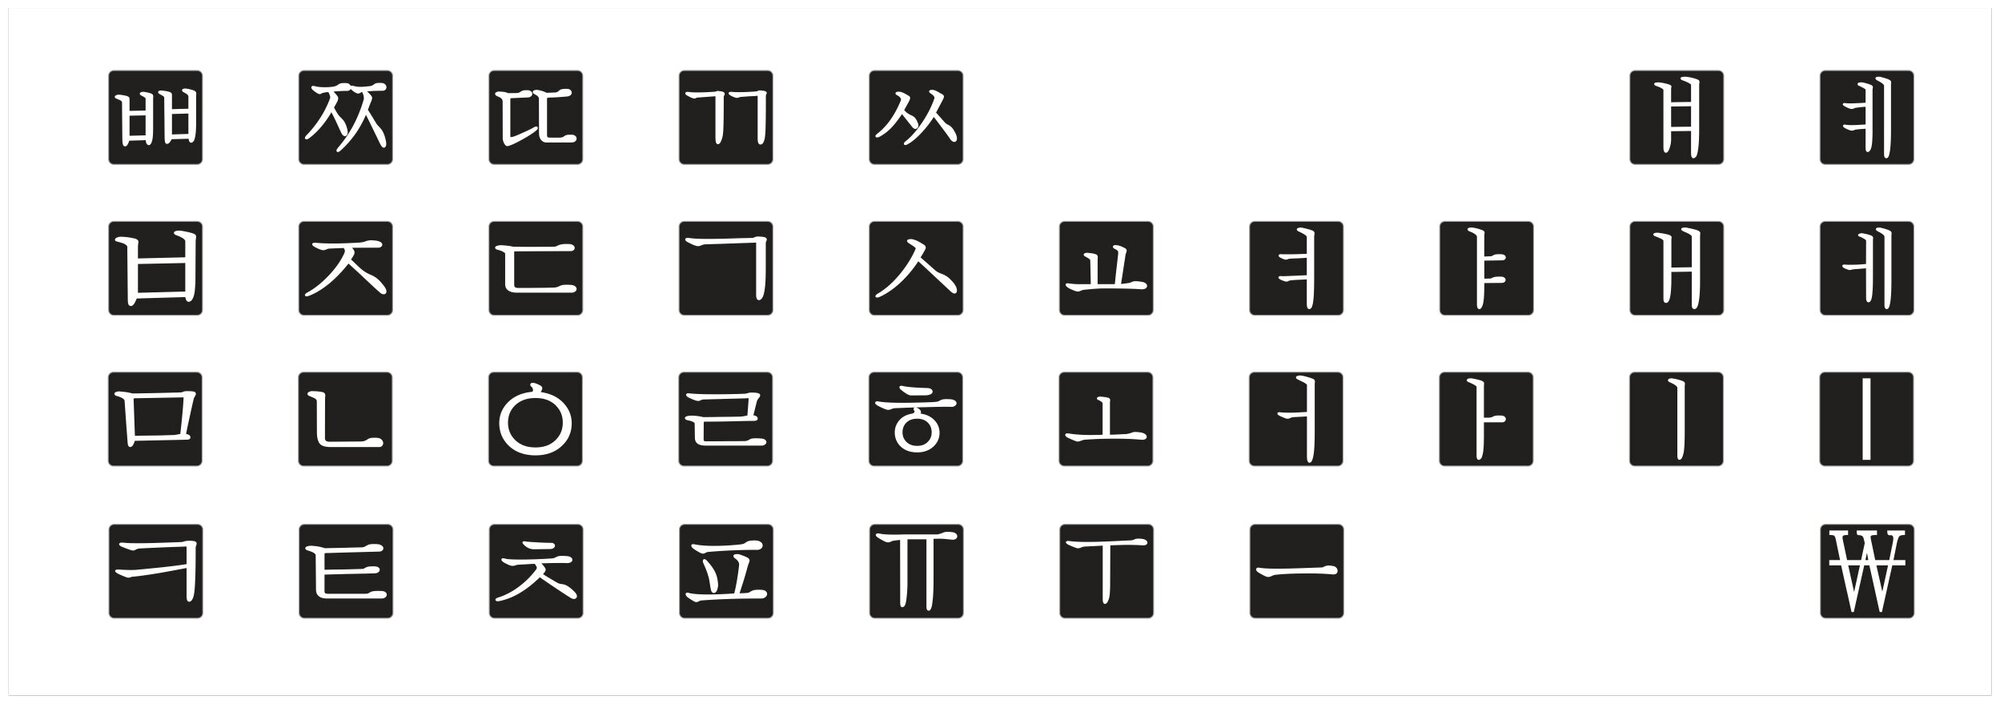 Корейский набор мини наклеек на клавиатуру, корейские символы, наклейки букв 5x5 мм.